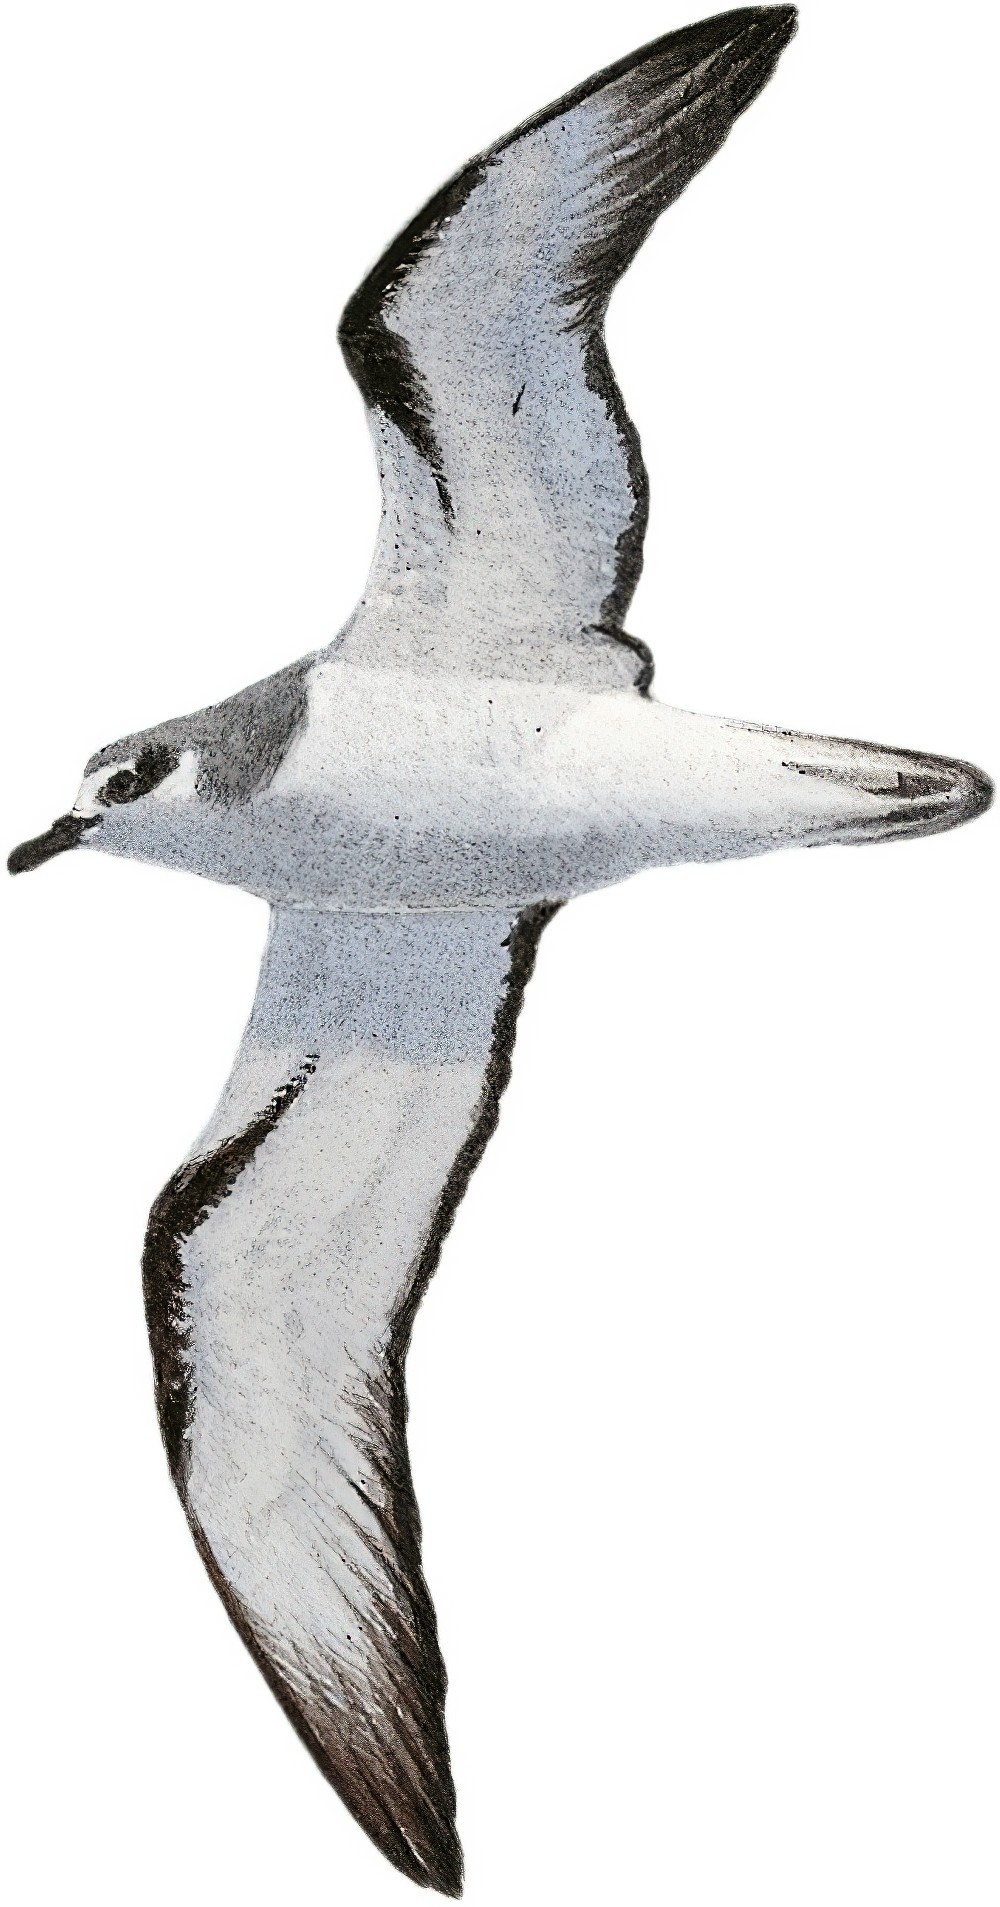 新西兰圆尾鹱 / Pycroft's Petrel / Pterodroma pycrofti